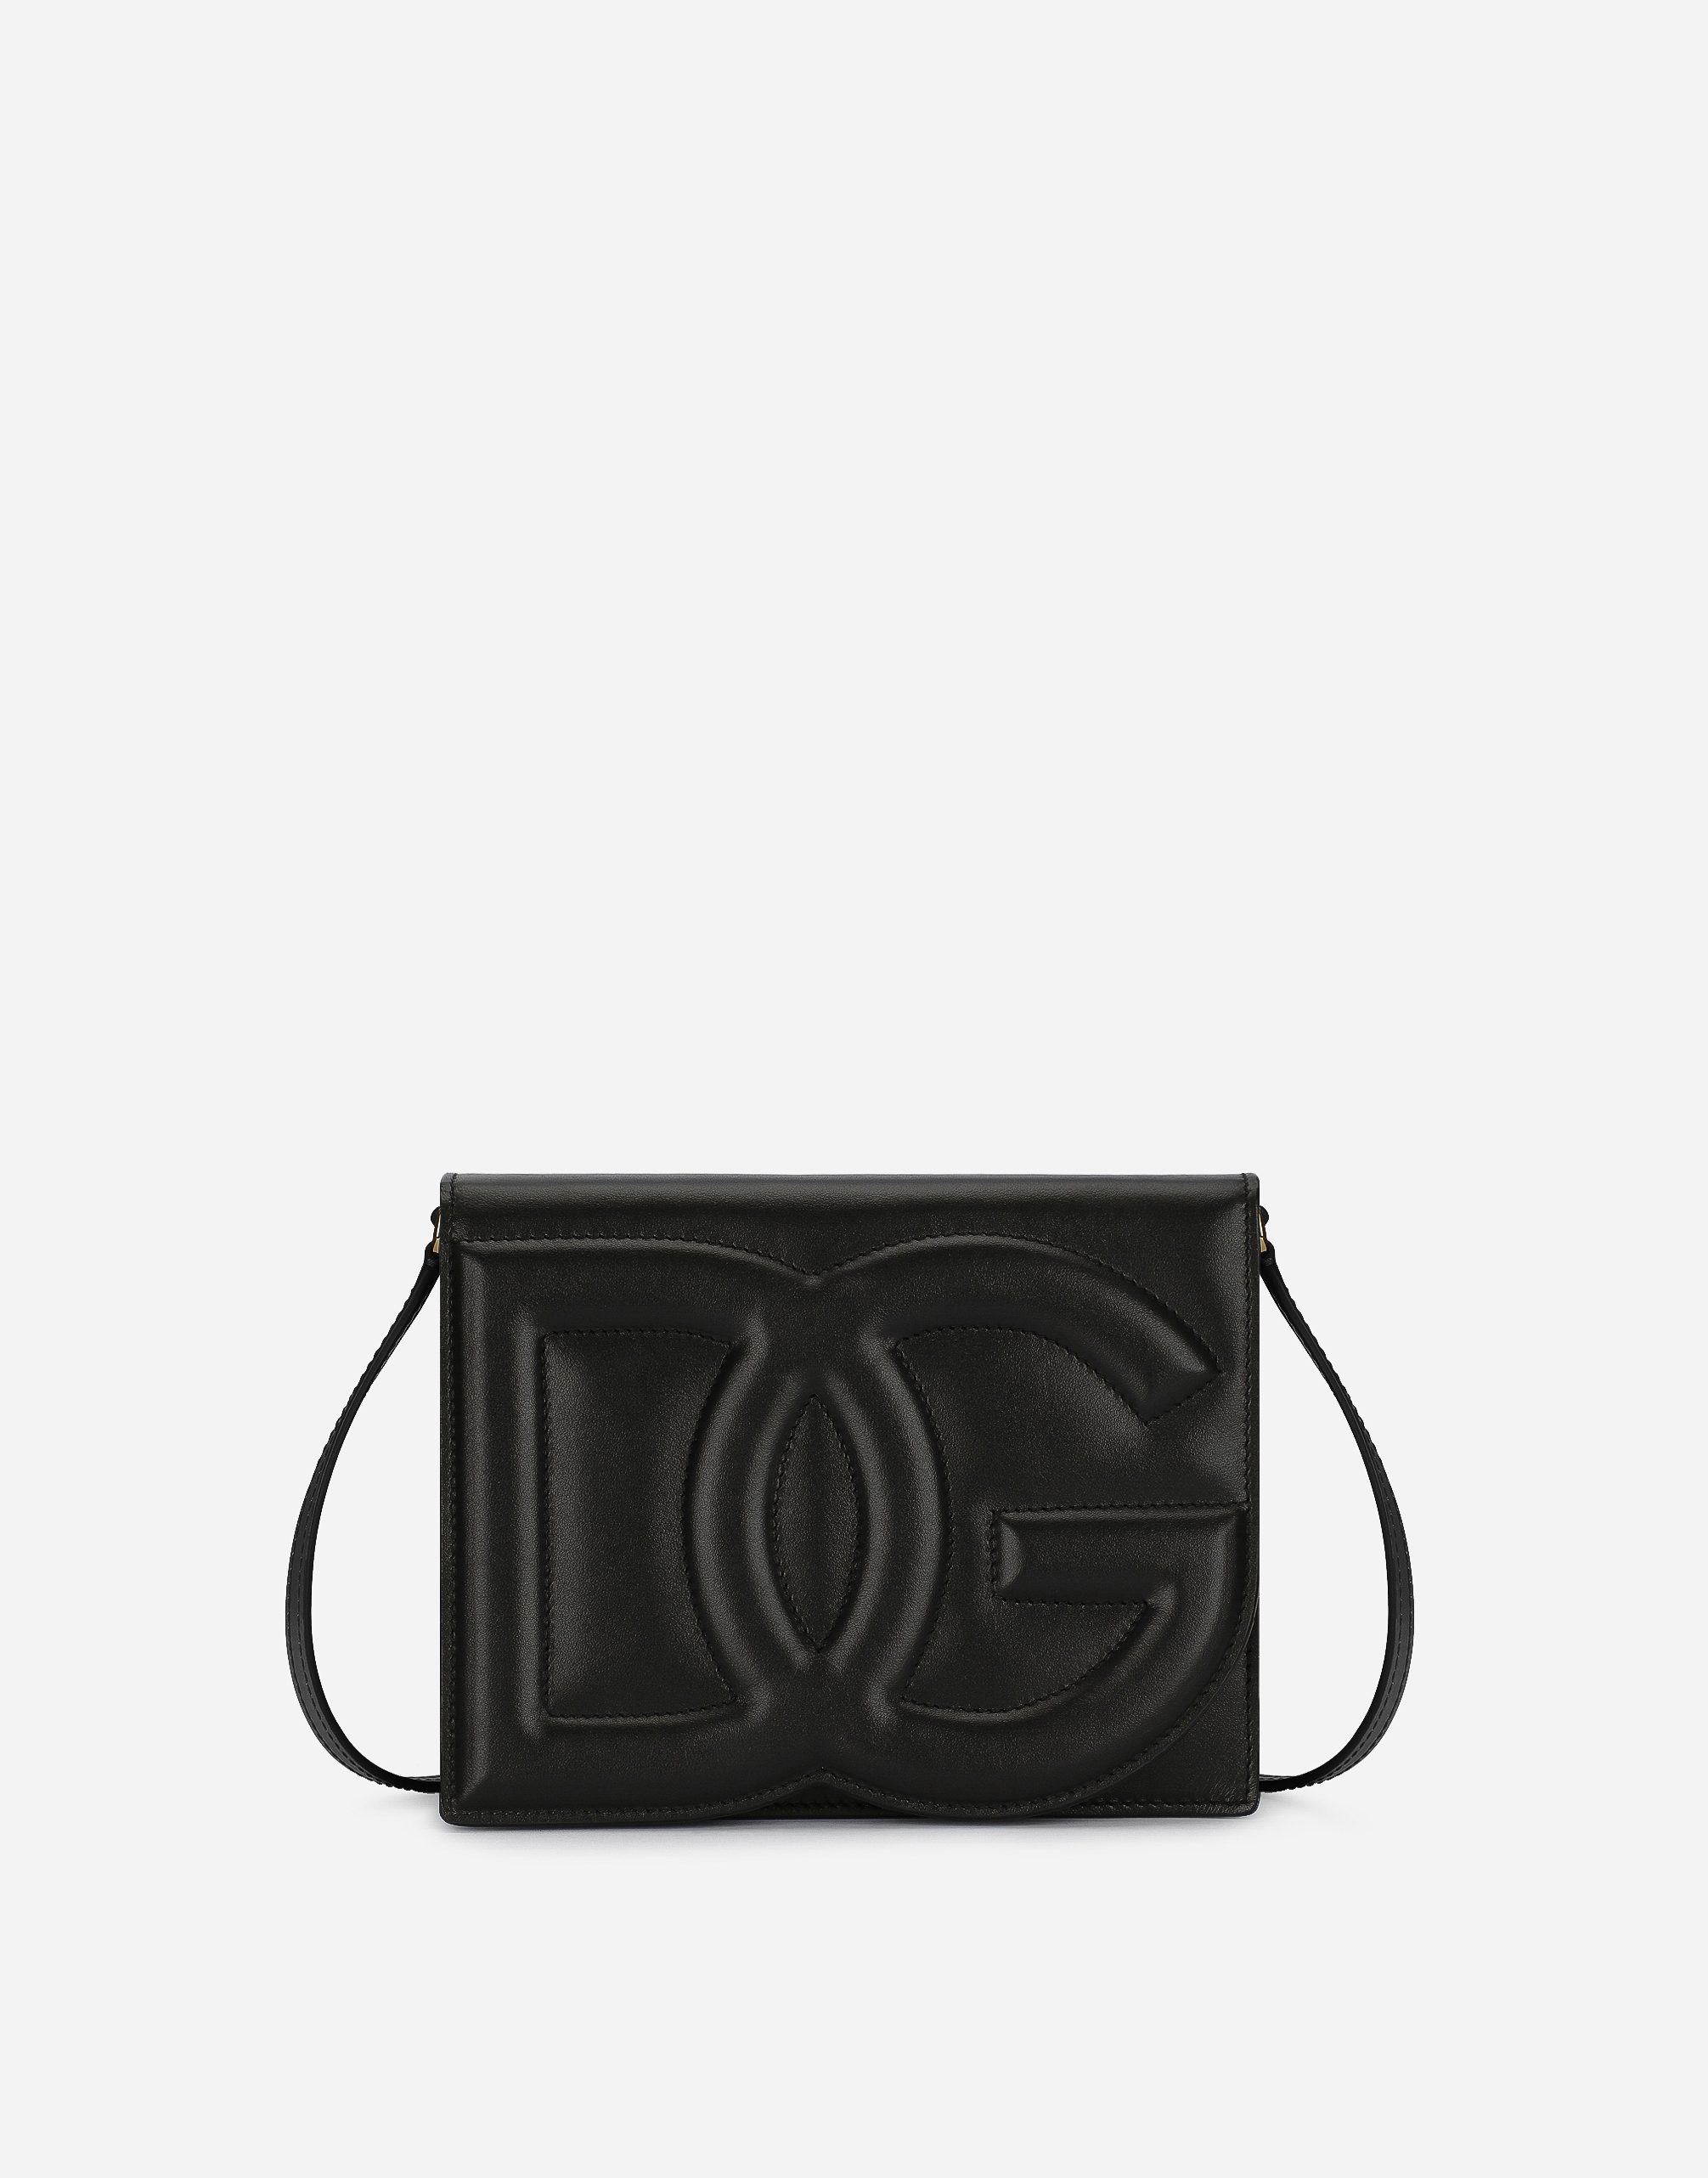 DG Logo crossbody bag in Black